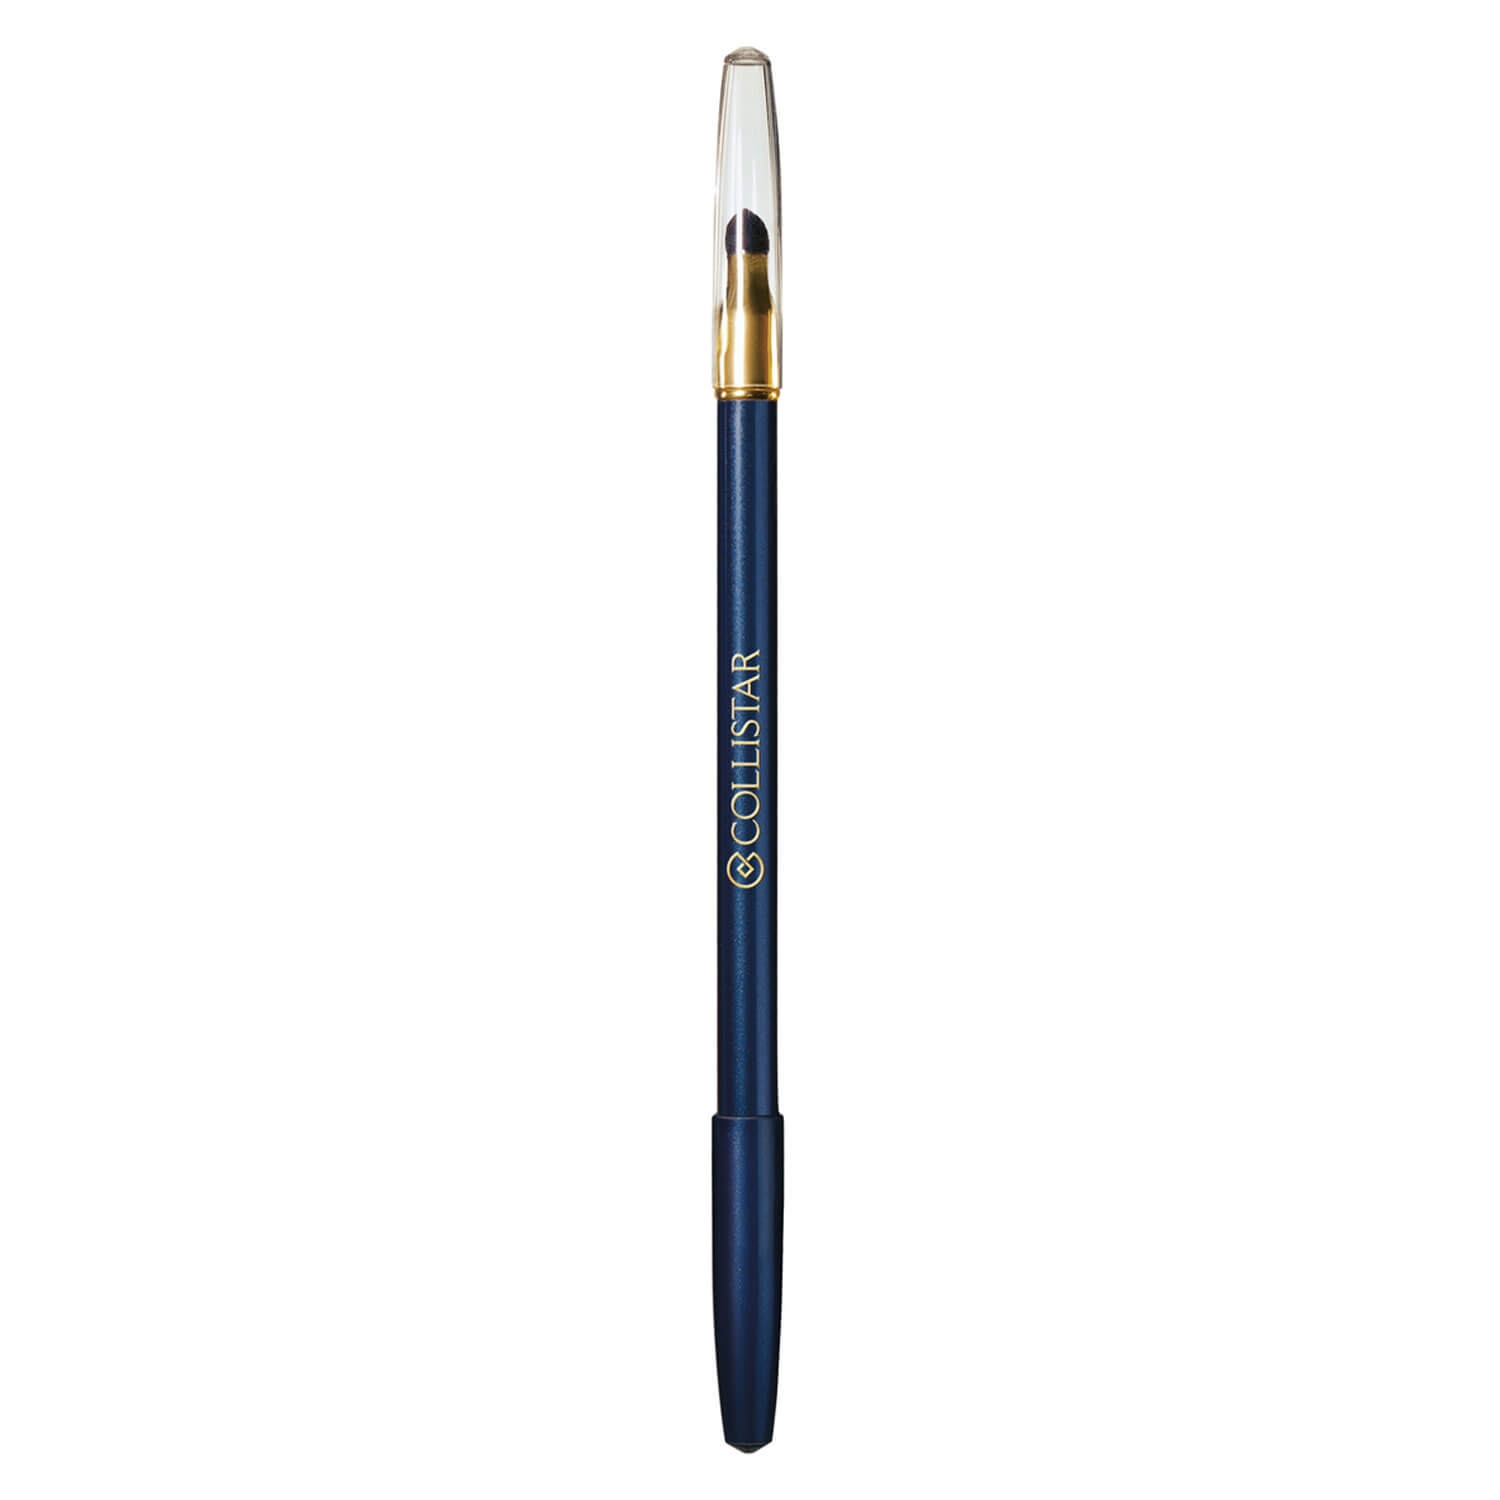 Produktbild von CS Eyes - Professional Eye Pencil 4 midnight blue